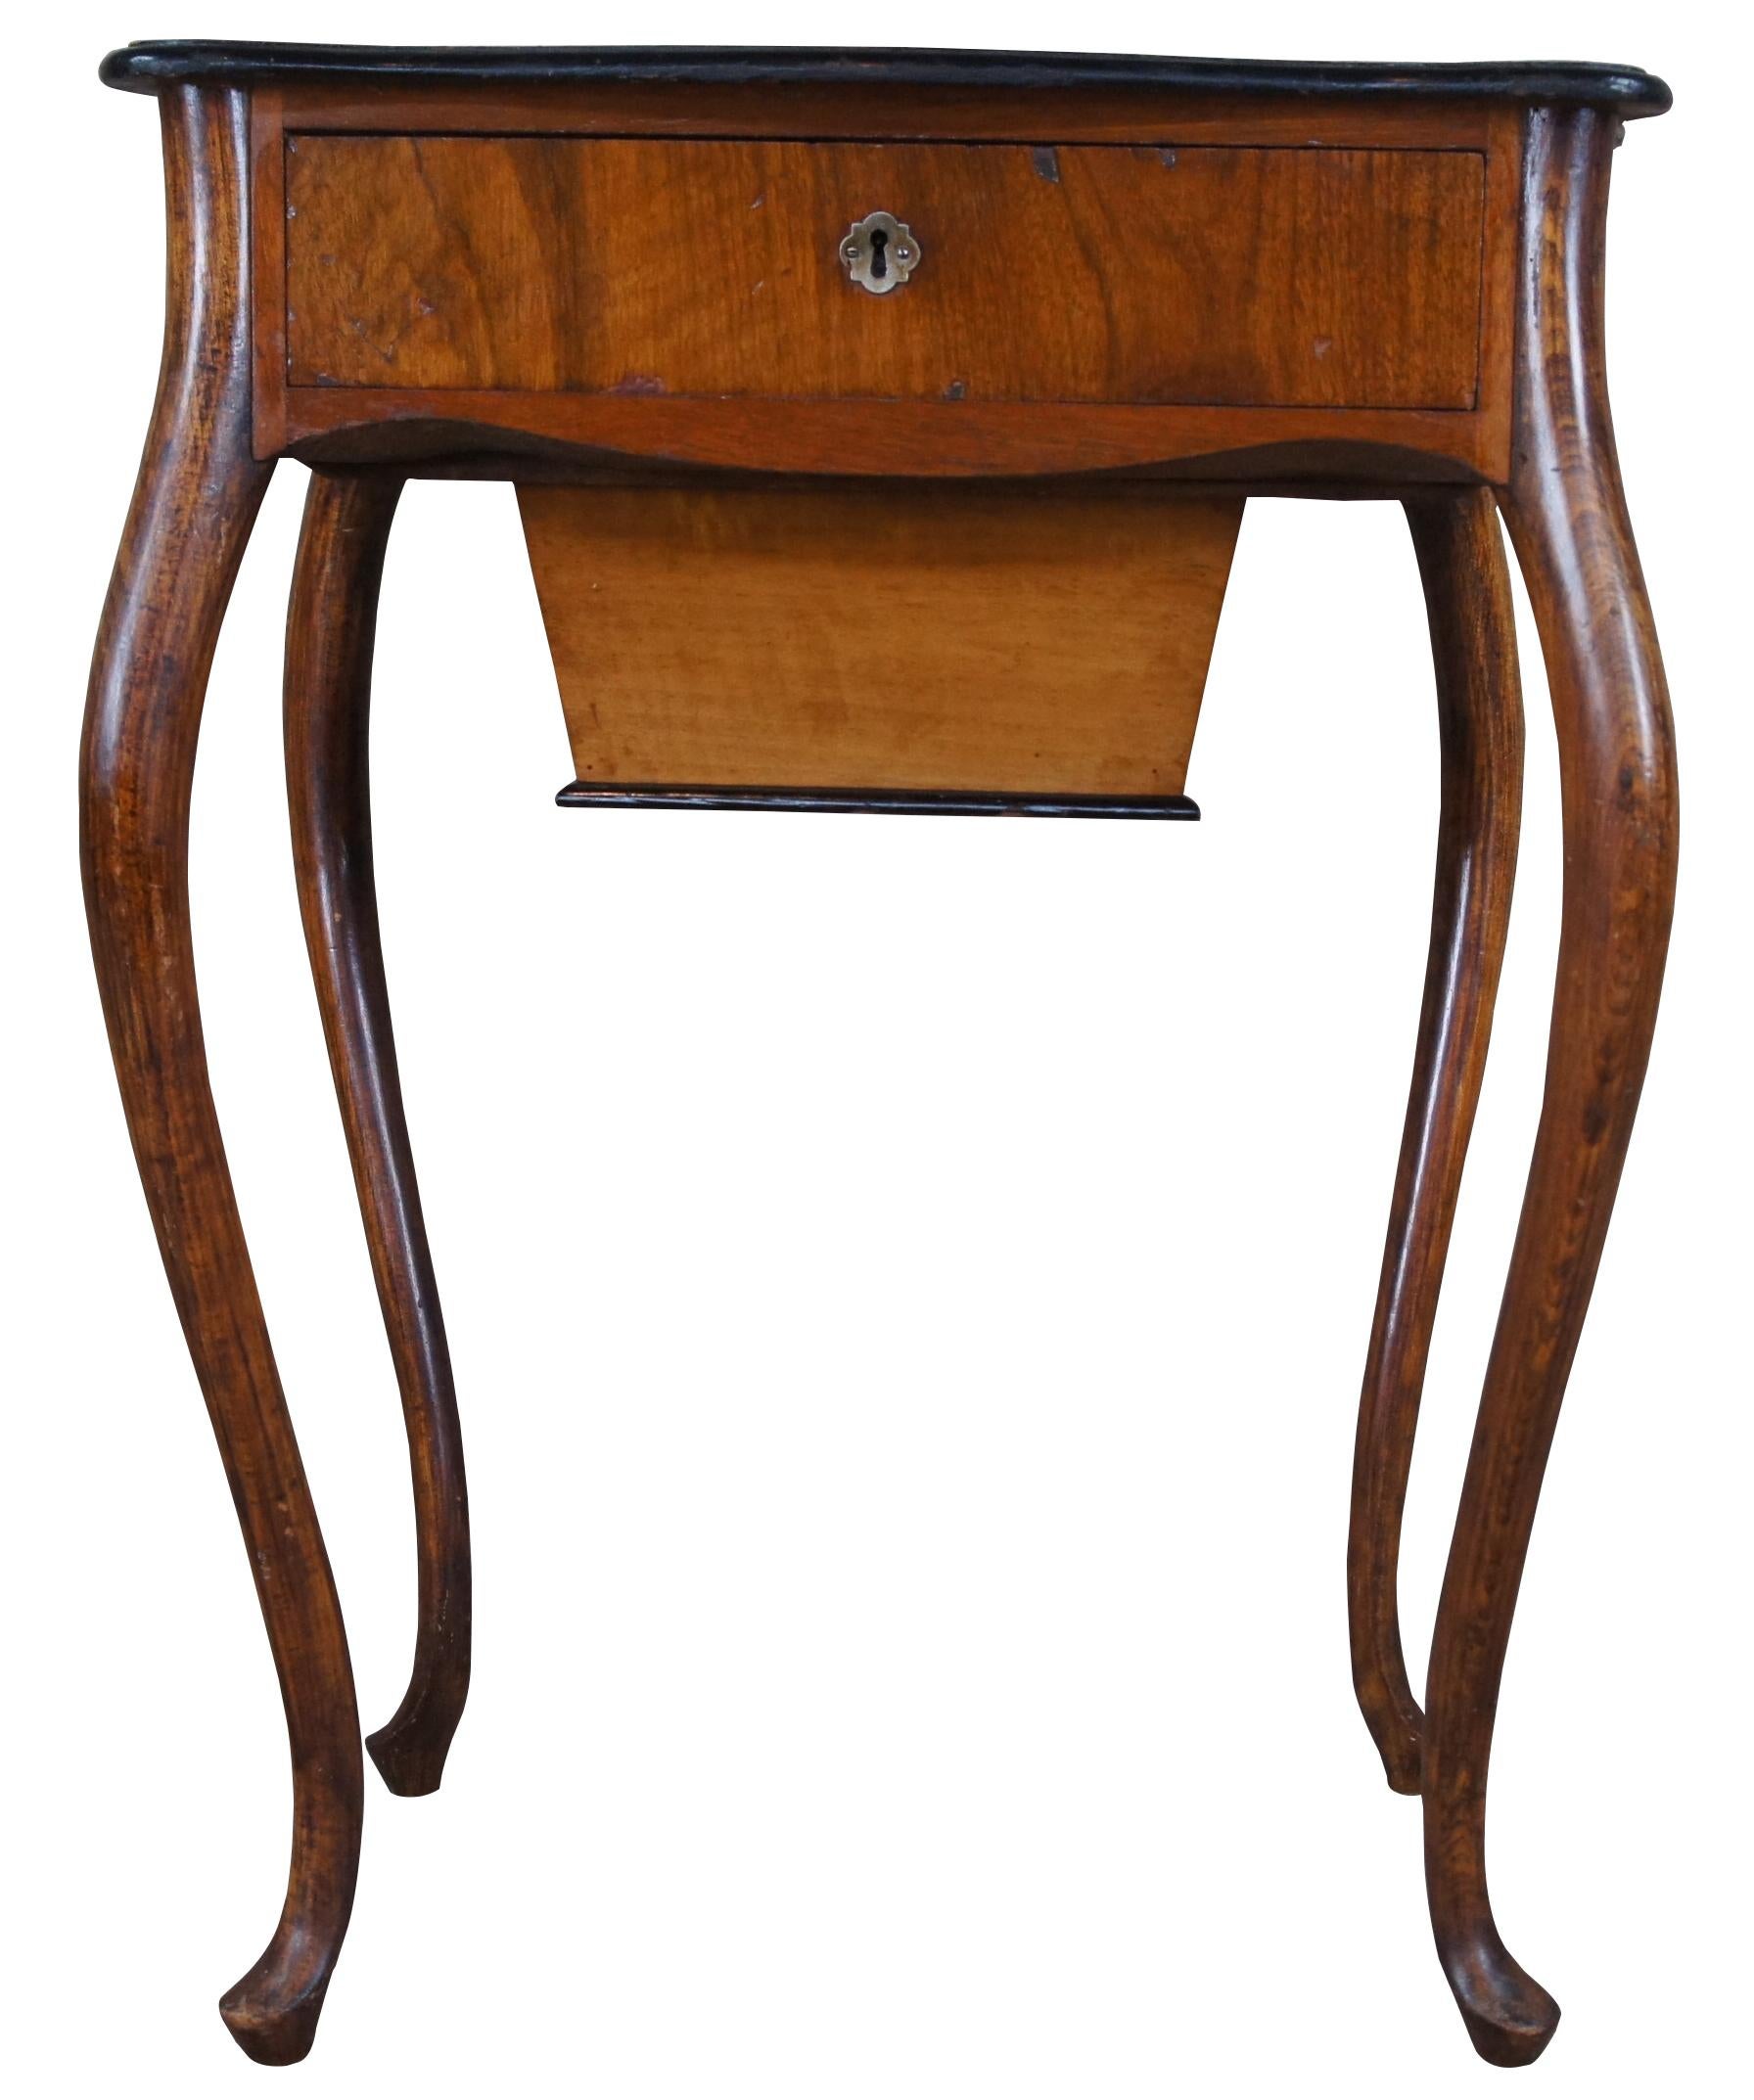 Table ou armoire de couture ancienne, vers les années 1910. Fabriqué en chêne et en noyer, il présente une forme serpentine avec un tiroir supérieur et un coffre inférieur.
 